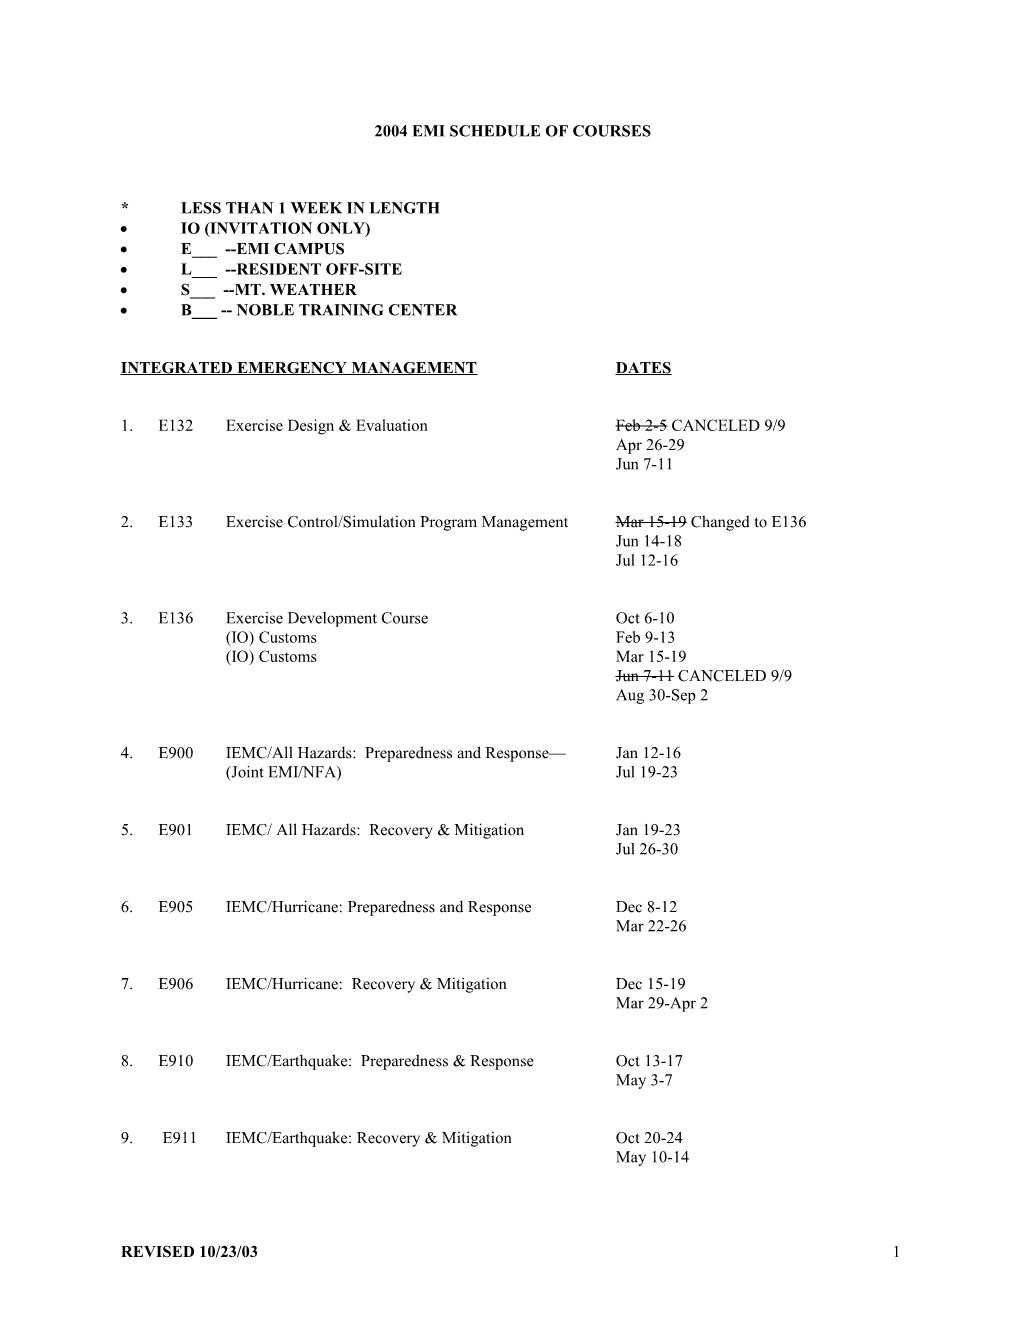 Fy 1999 Emi Schedule of Courses